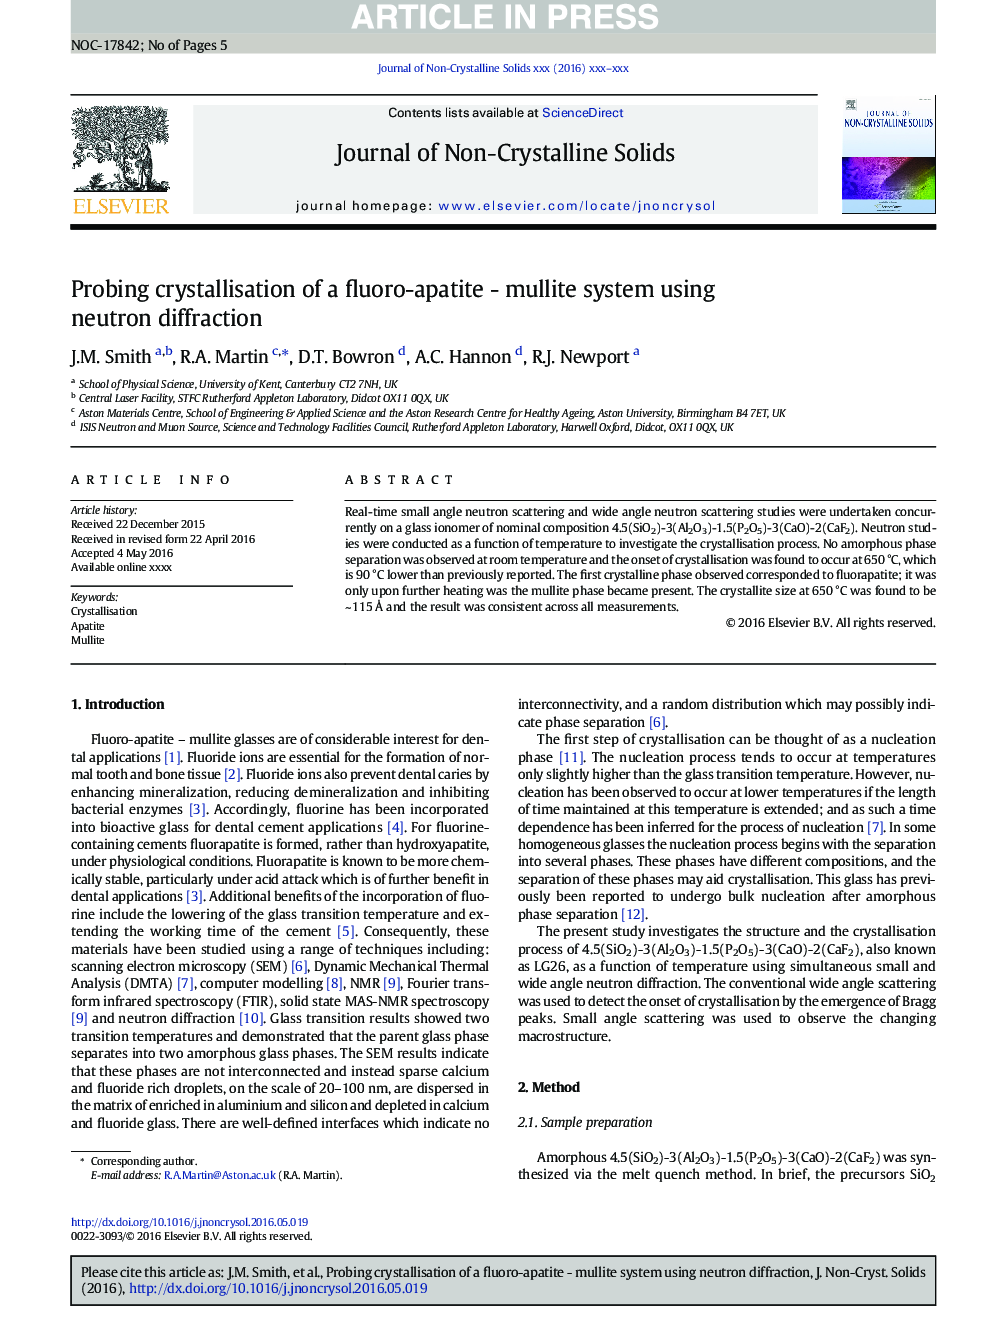 بررسی کریستالیزاسیون سیستم فلورا آپاتیت - مولیت با استفاده از پراش نوترون 